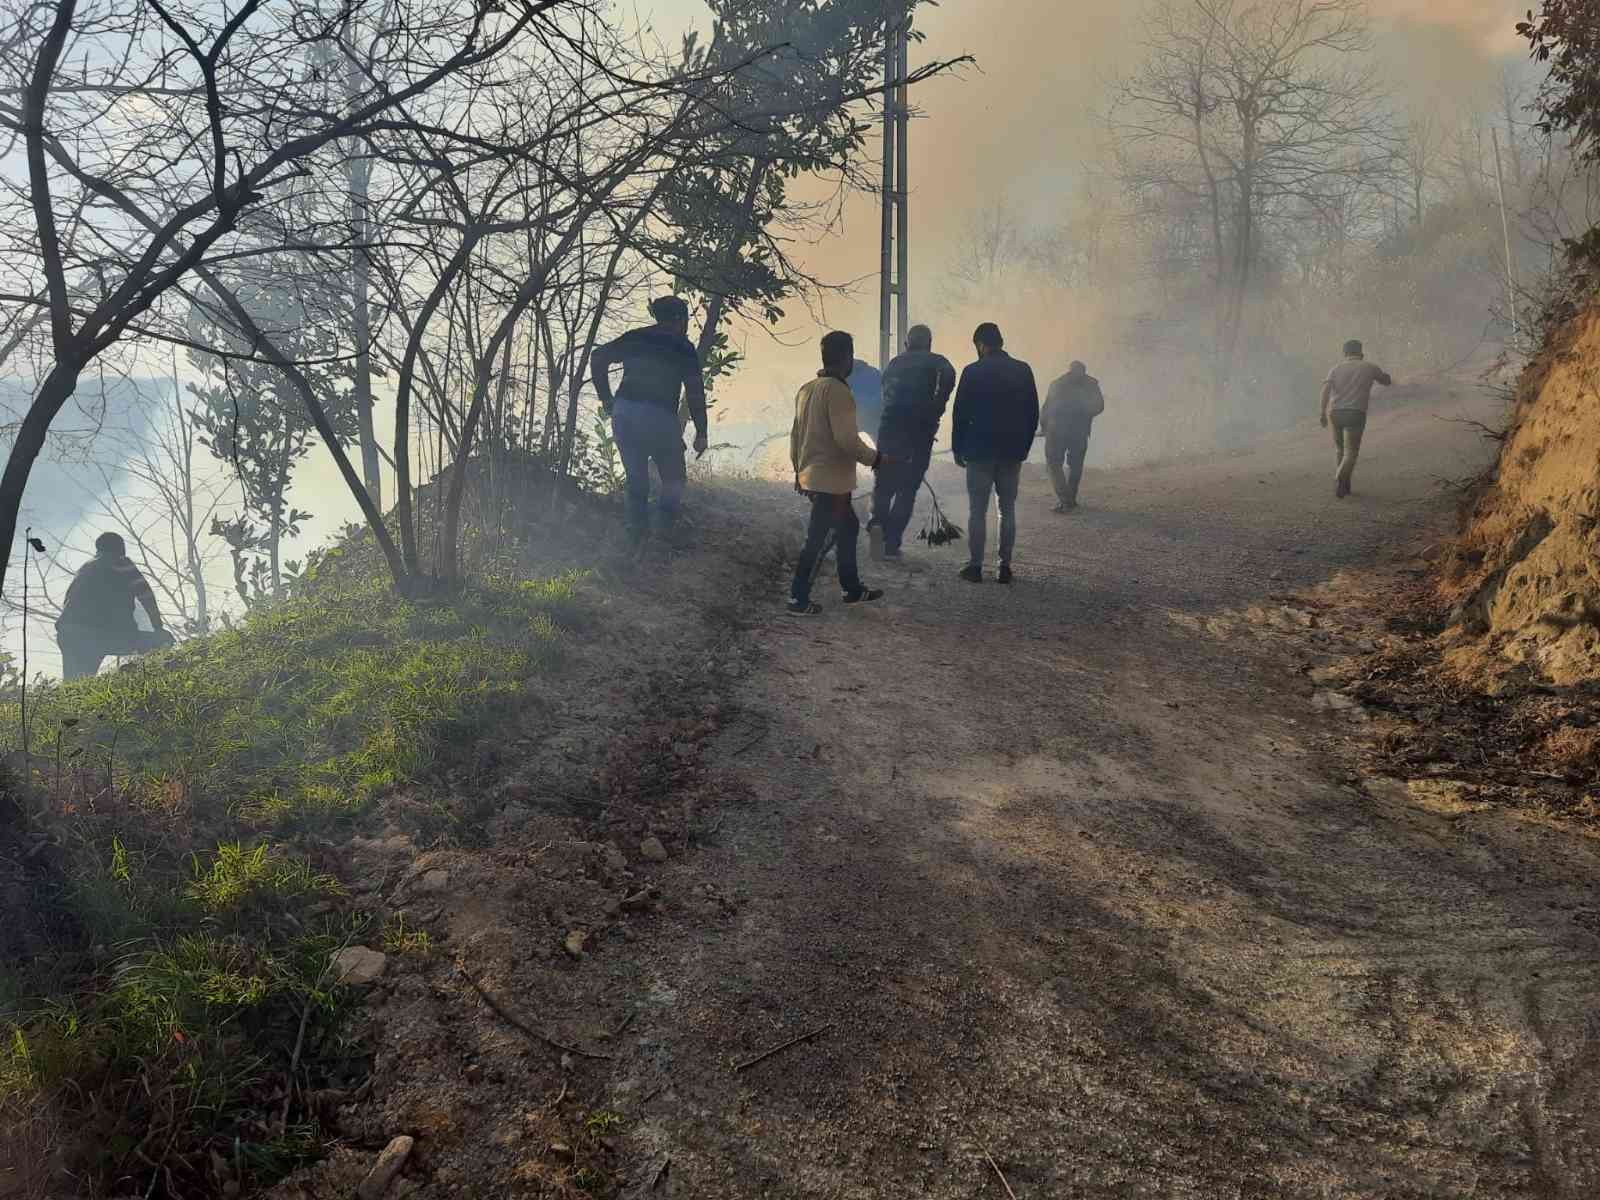 Trabzon’un Sürmene ilçesinde bahçe temizliği orman yangınına neden oldu #trabzon